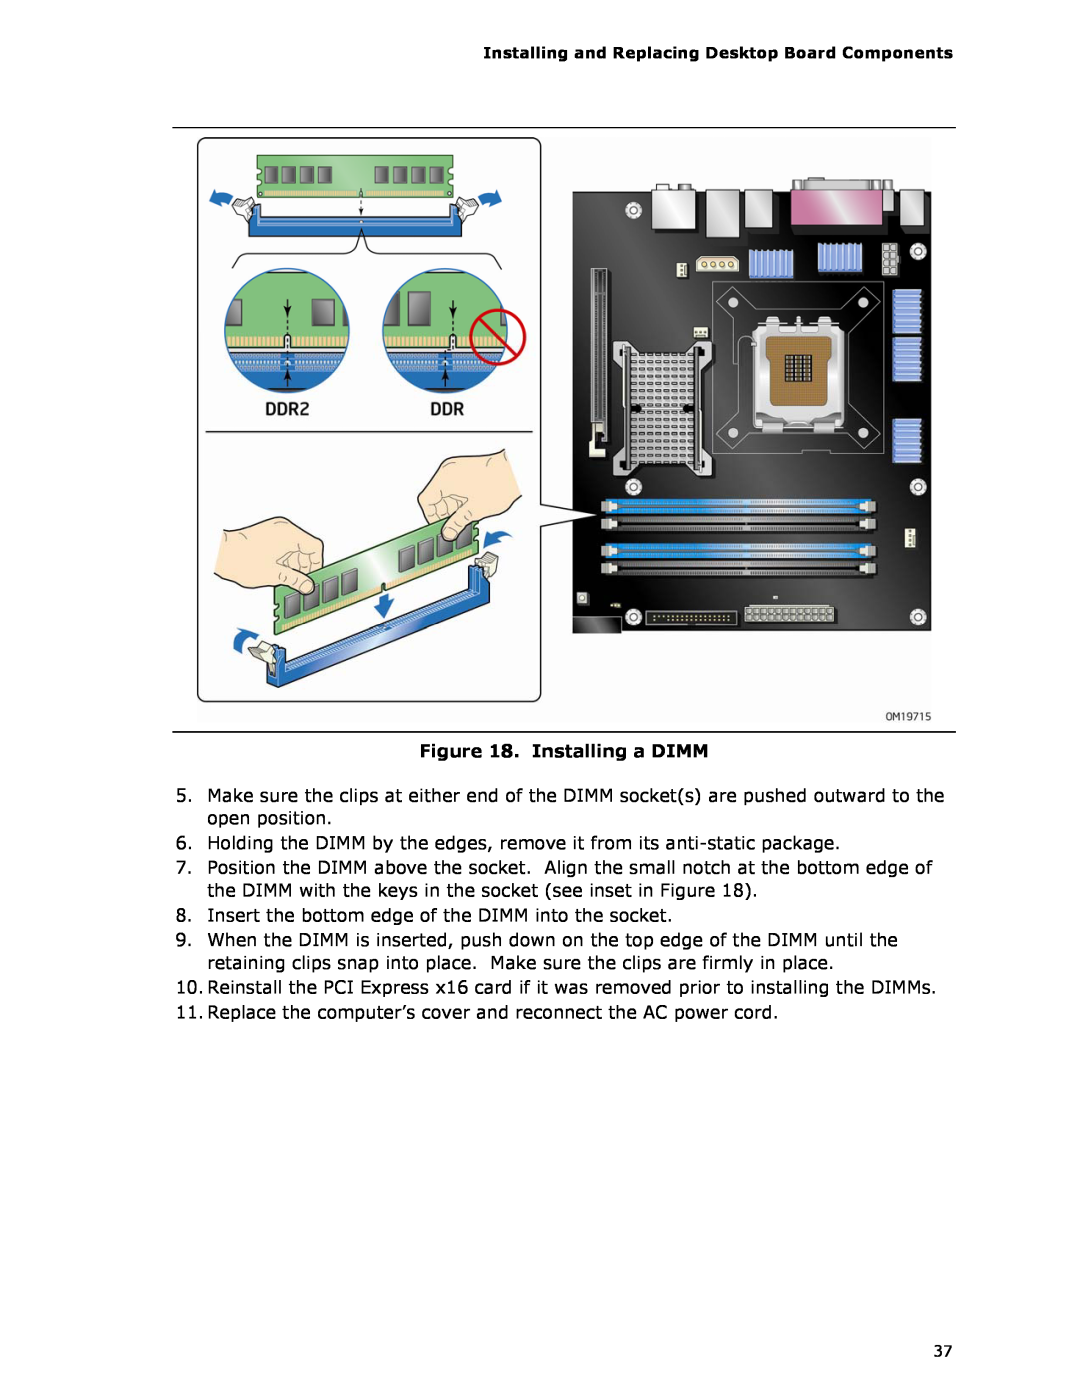 Intel D975XBX2 manual Installing a DIMM 